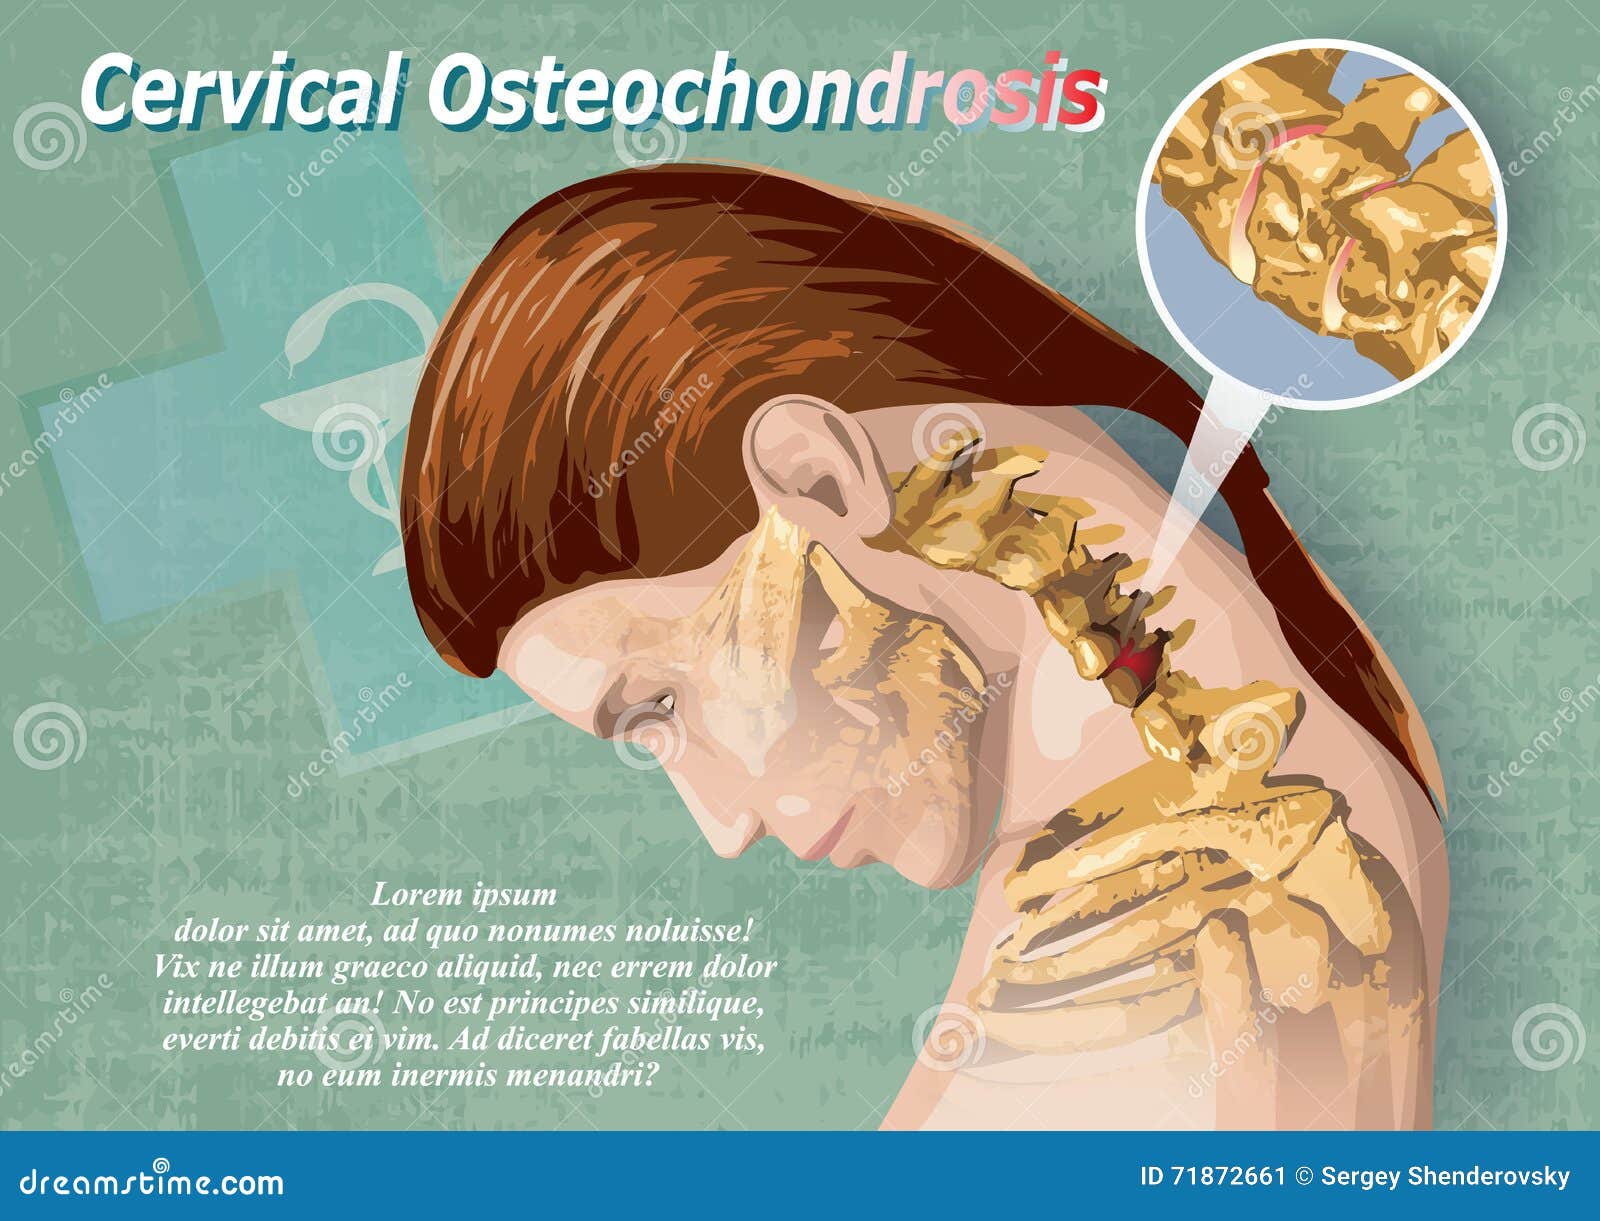 Osteochondrosis A figyelmeztetés nélkül jelentkező gyakori betegség! HCC